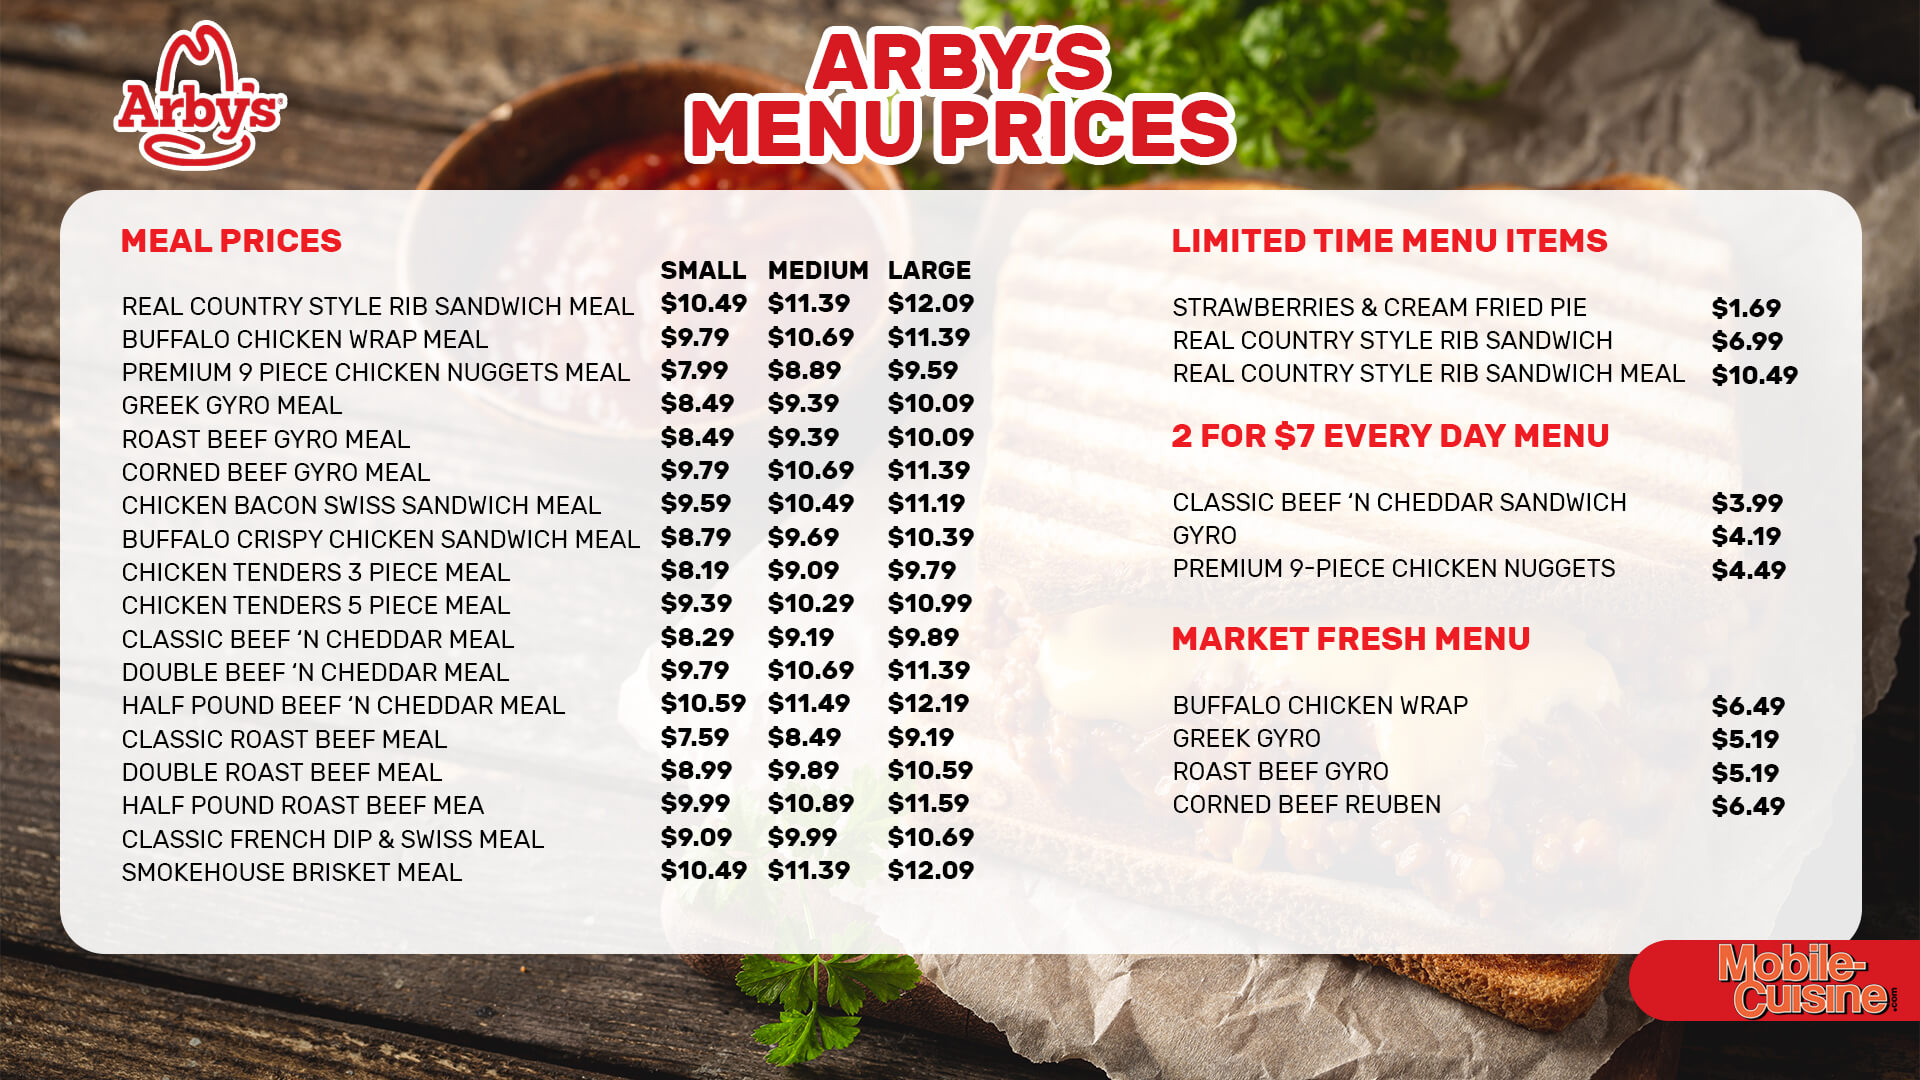 Arby's menu prices